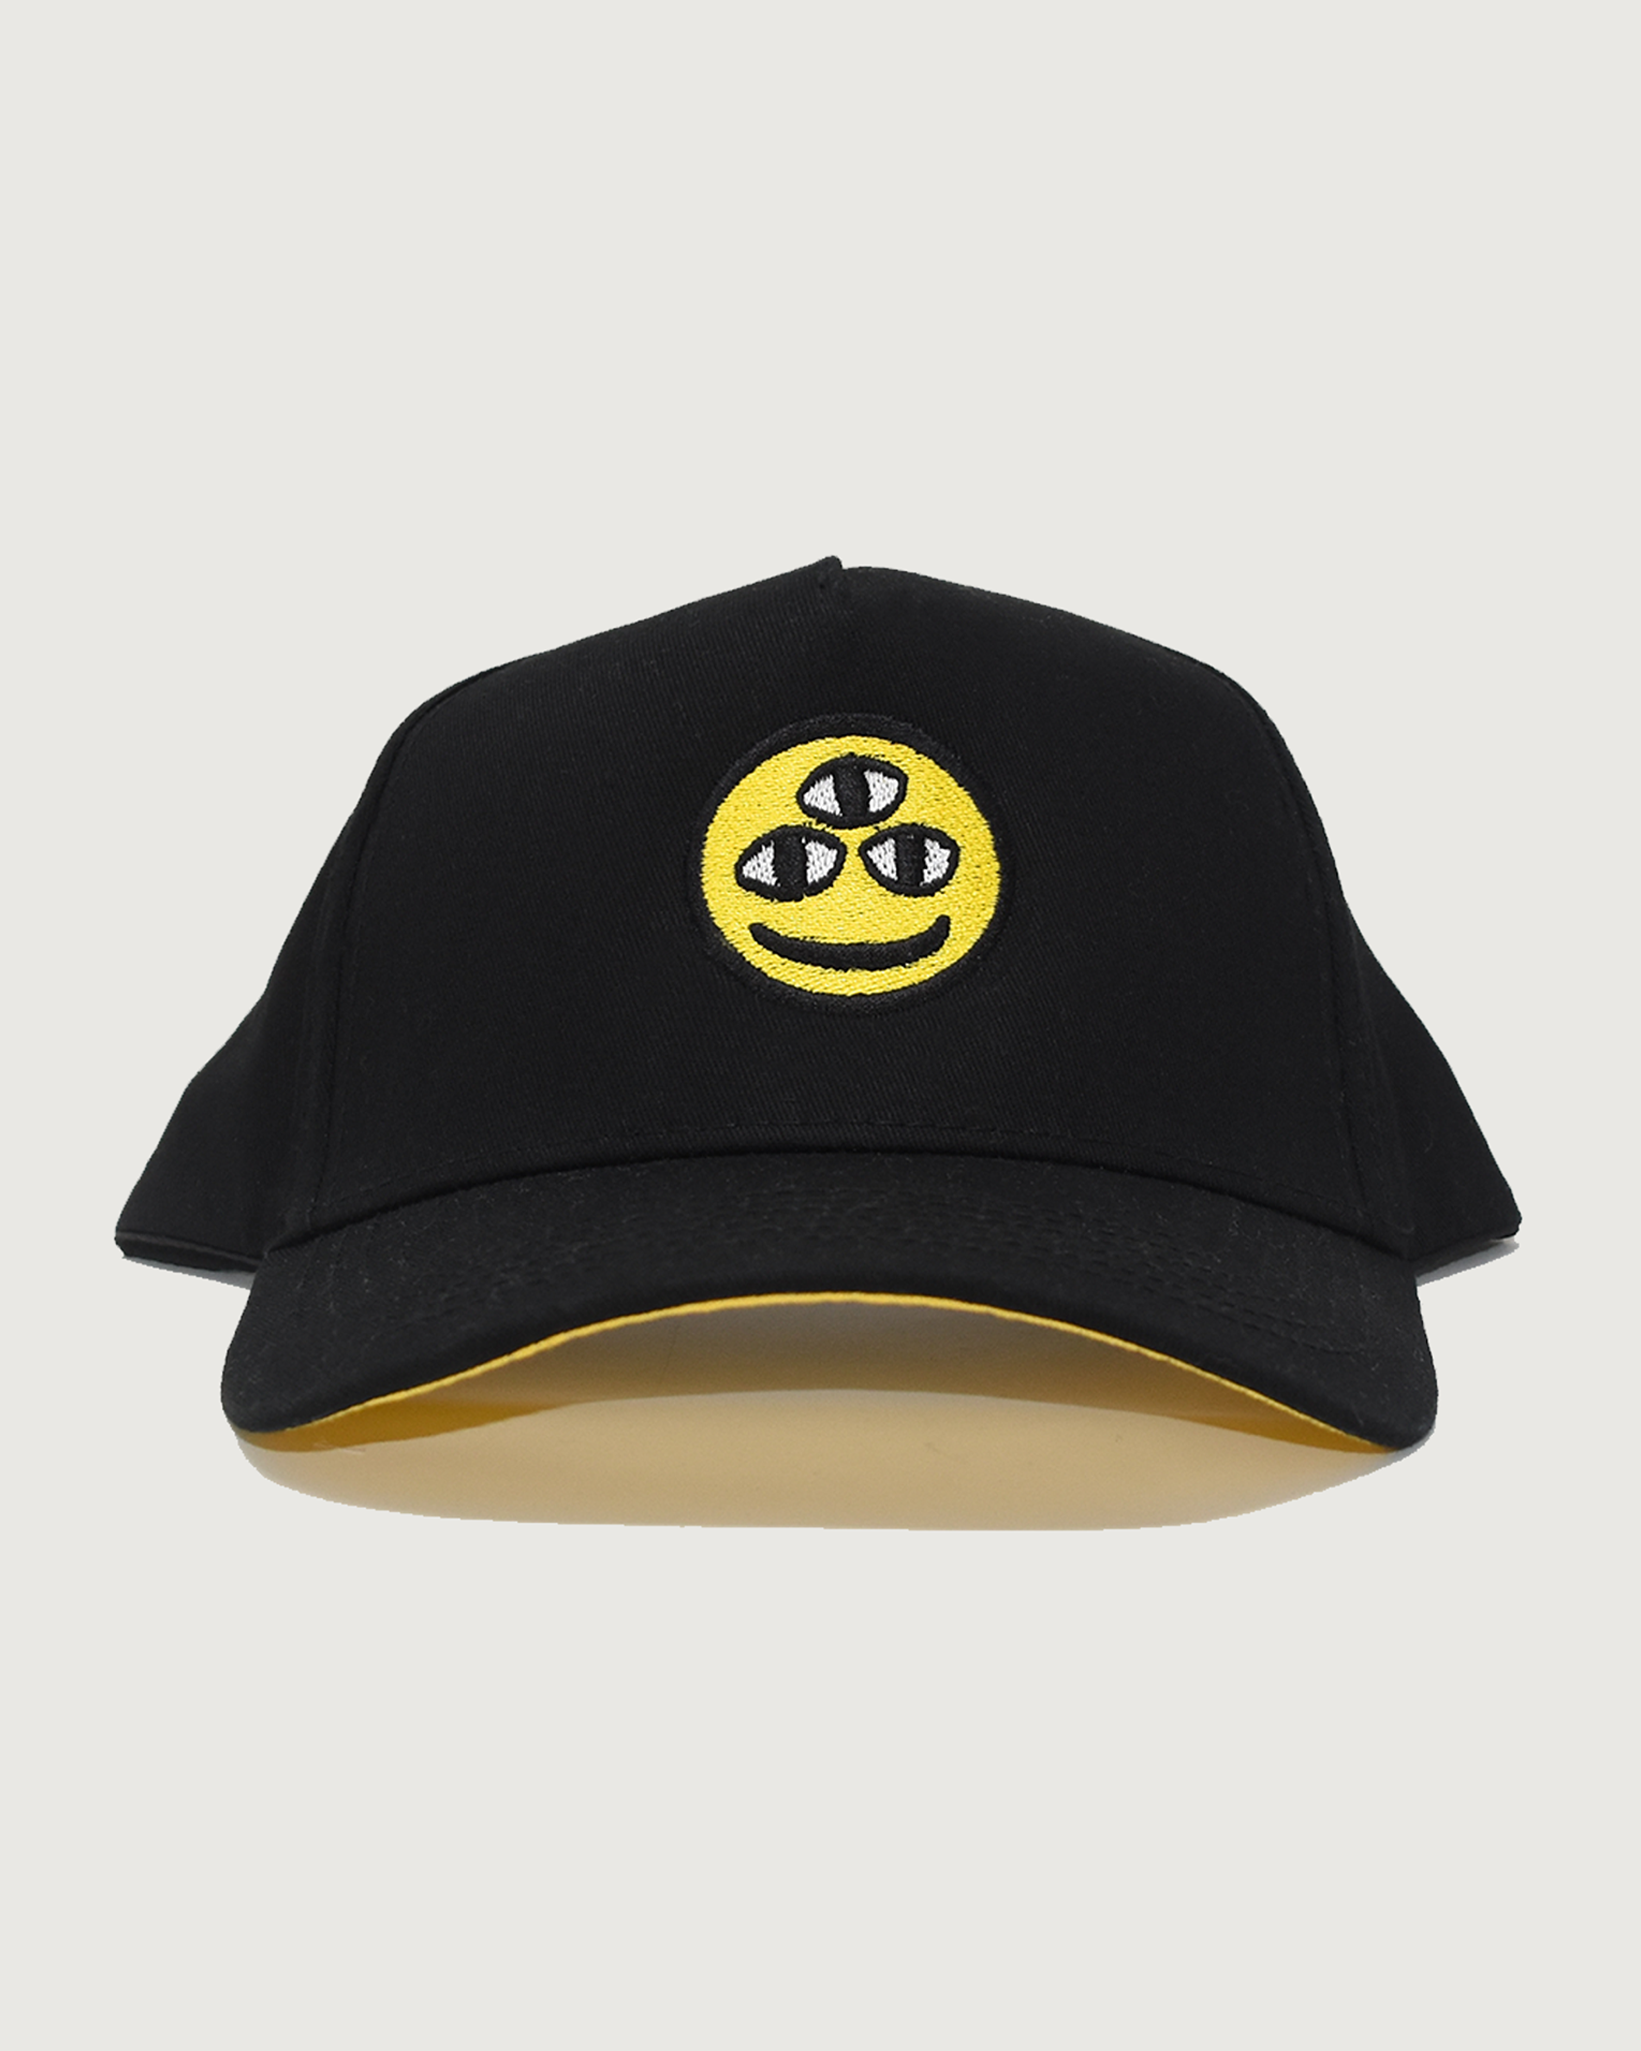 Dishin Hat (Smiley)